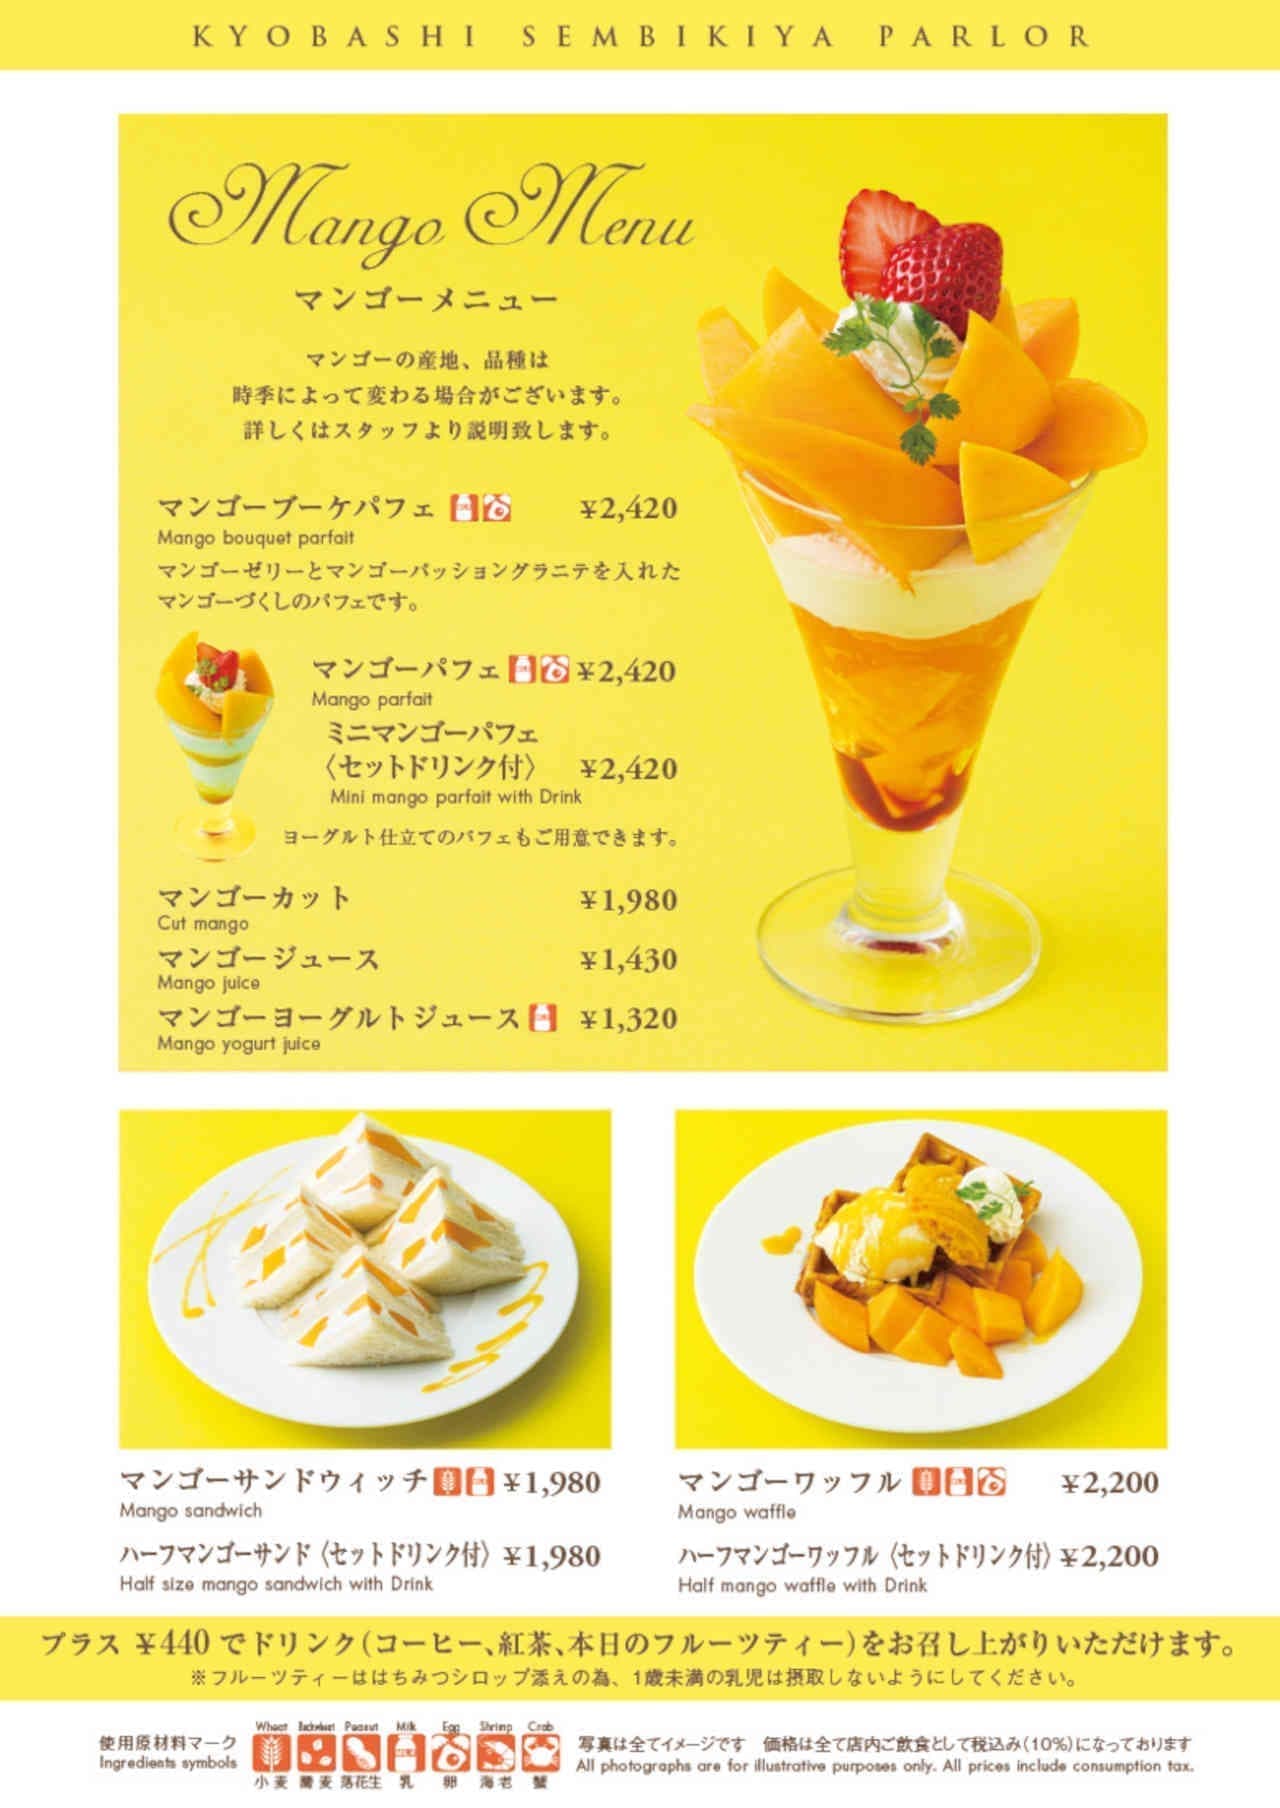 Kyobashi Senbiya "Mango Menu"